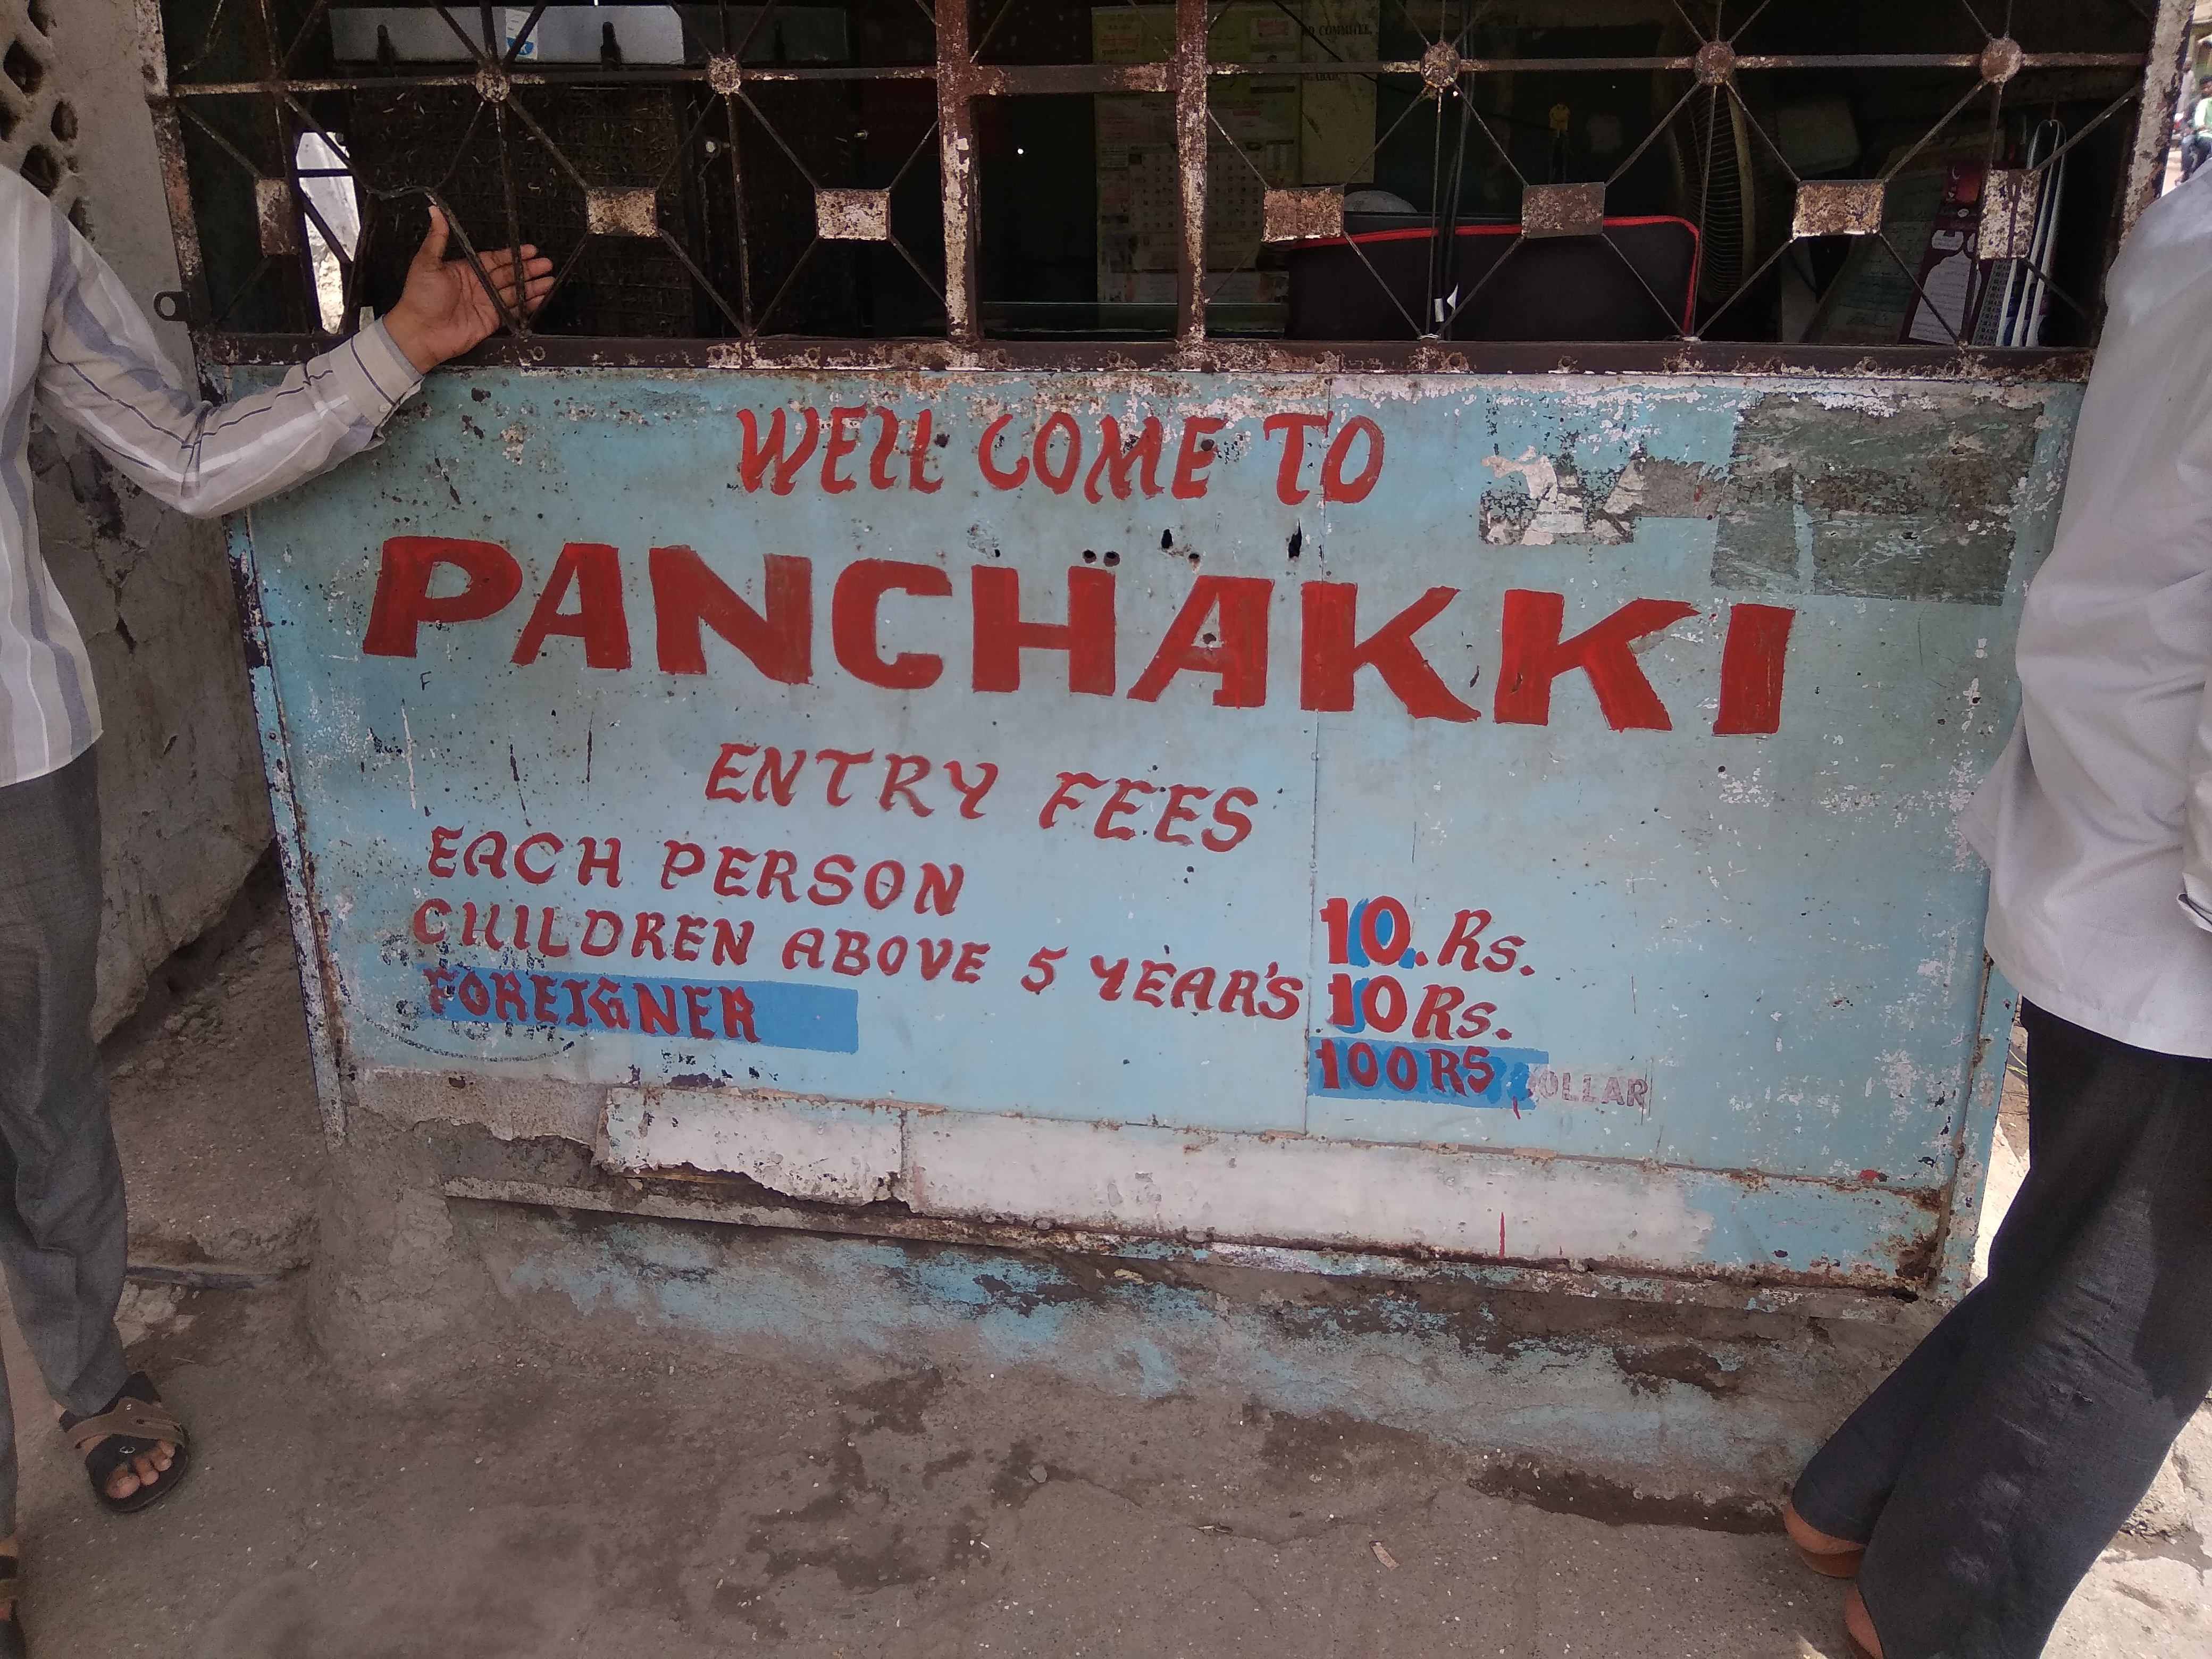 Panchakki Entrance fees